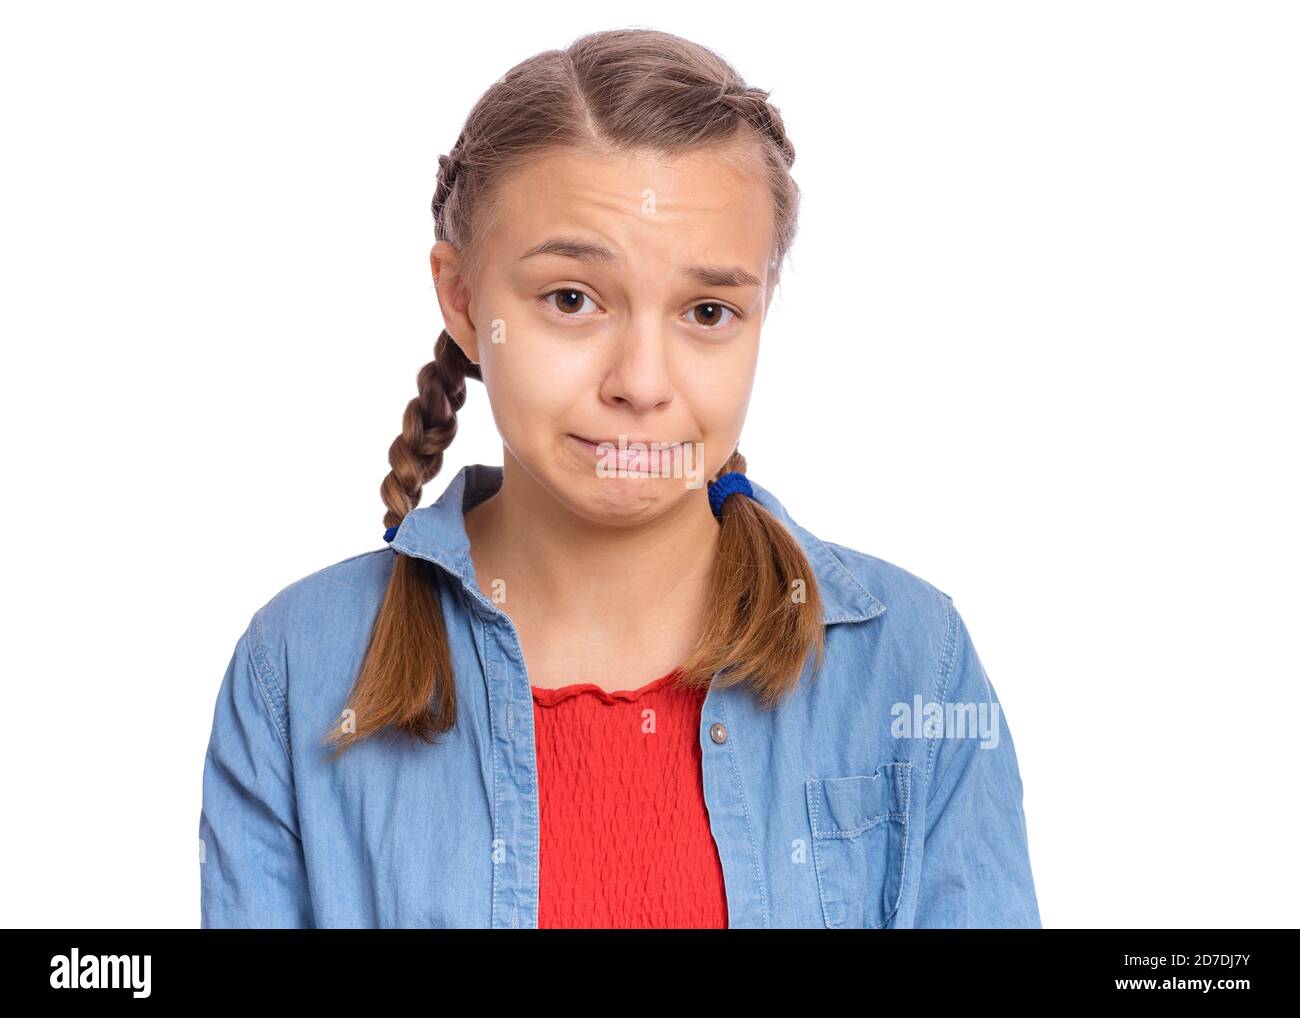 Emotionales Porträt von verängstigten Mädchen Teenager, isoliert auf weißem Hintergrund Stockfoto